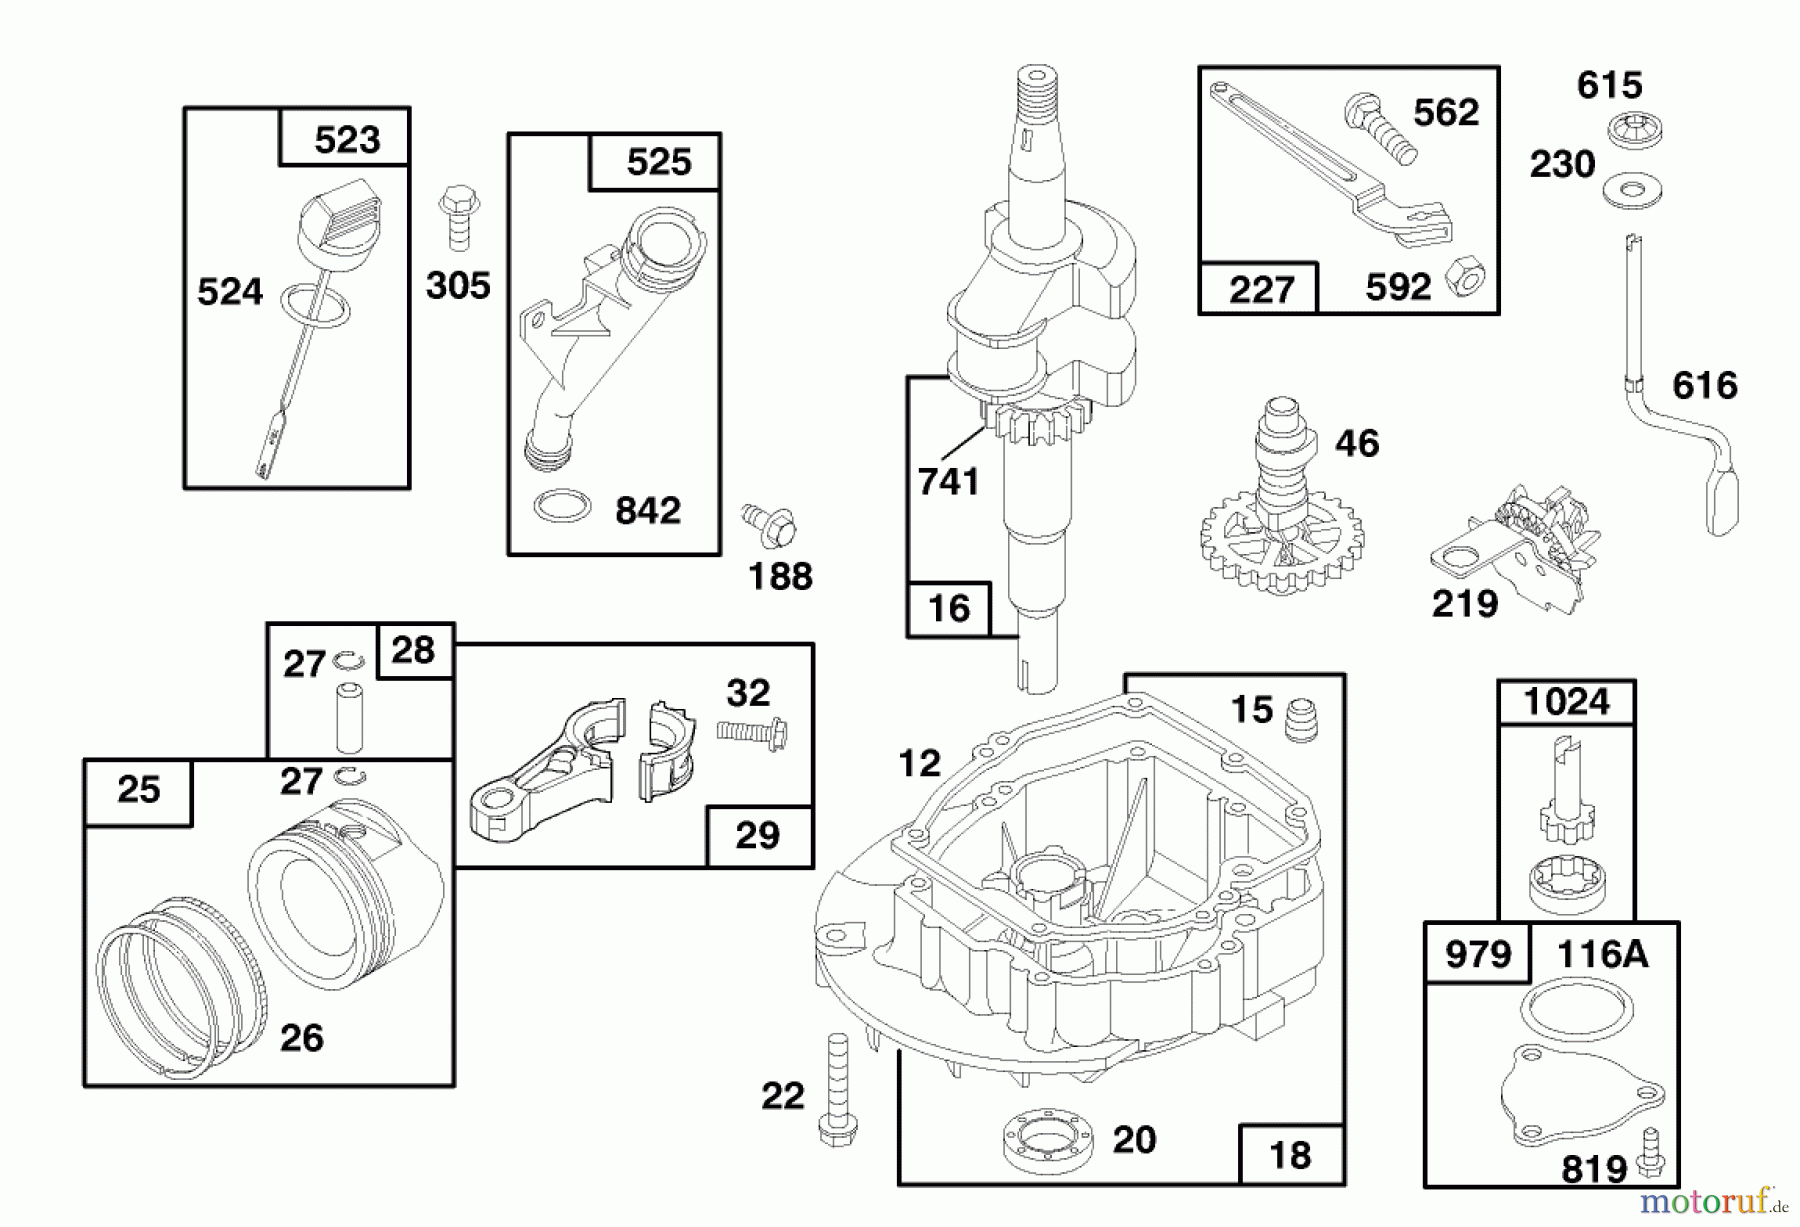  Toro Neu Mowers, Walk-Behind Seite 1 20464 - Toro Super Recycler Lawnmower, 1996 (6900001-6999999) ENGINE GTS 150 #2